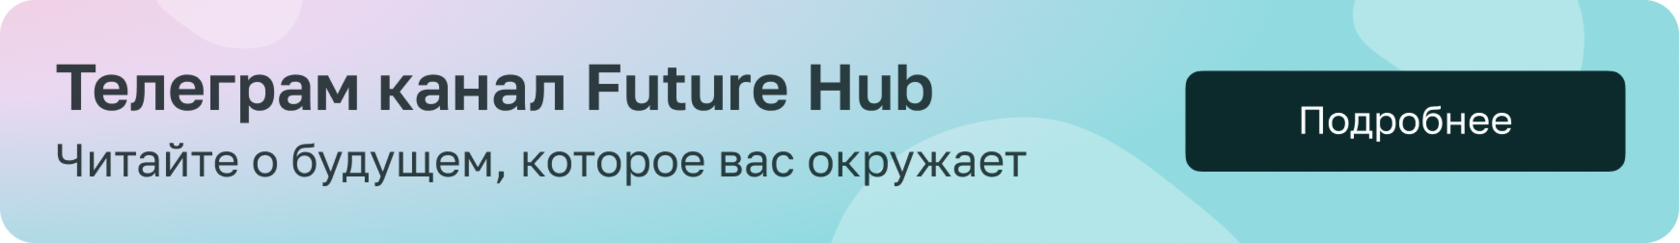 Телеграм канал Future Hub